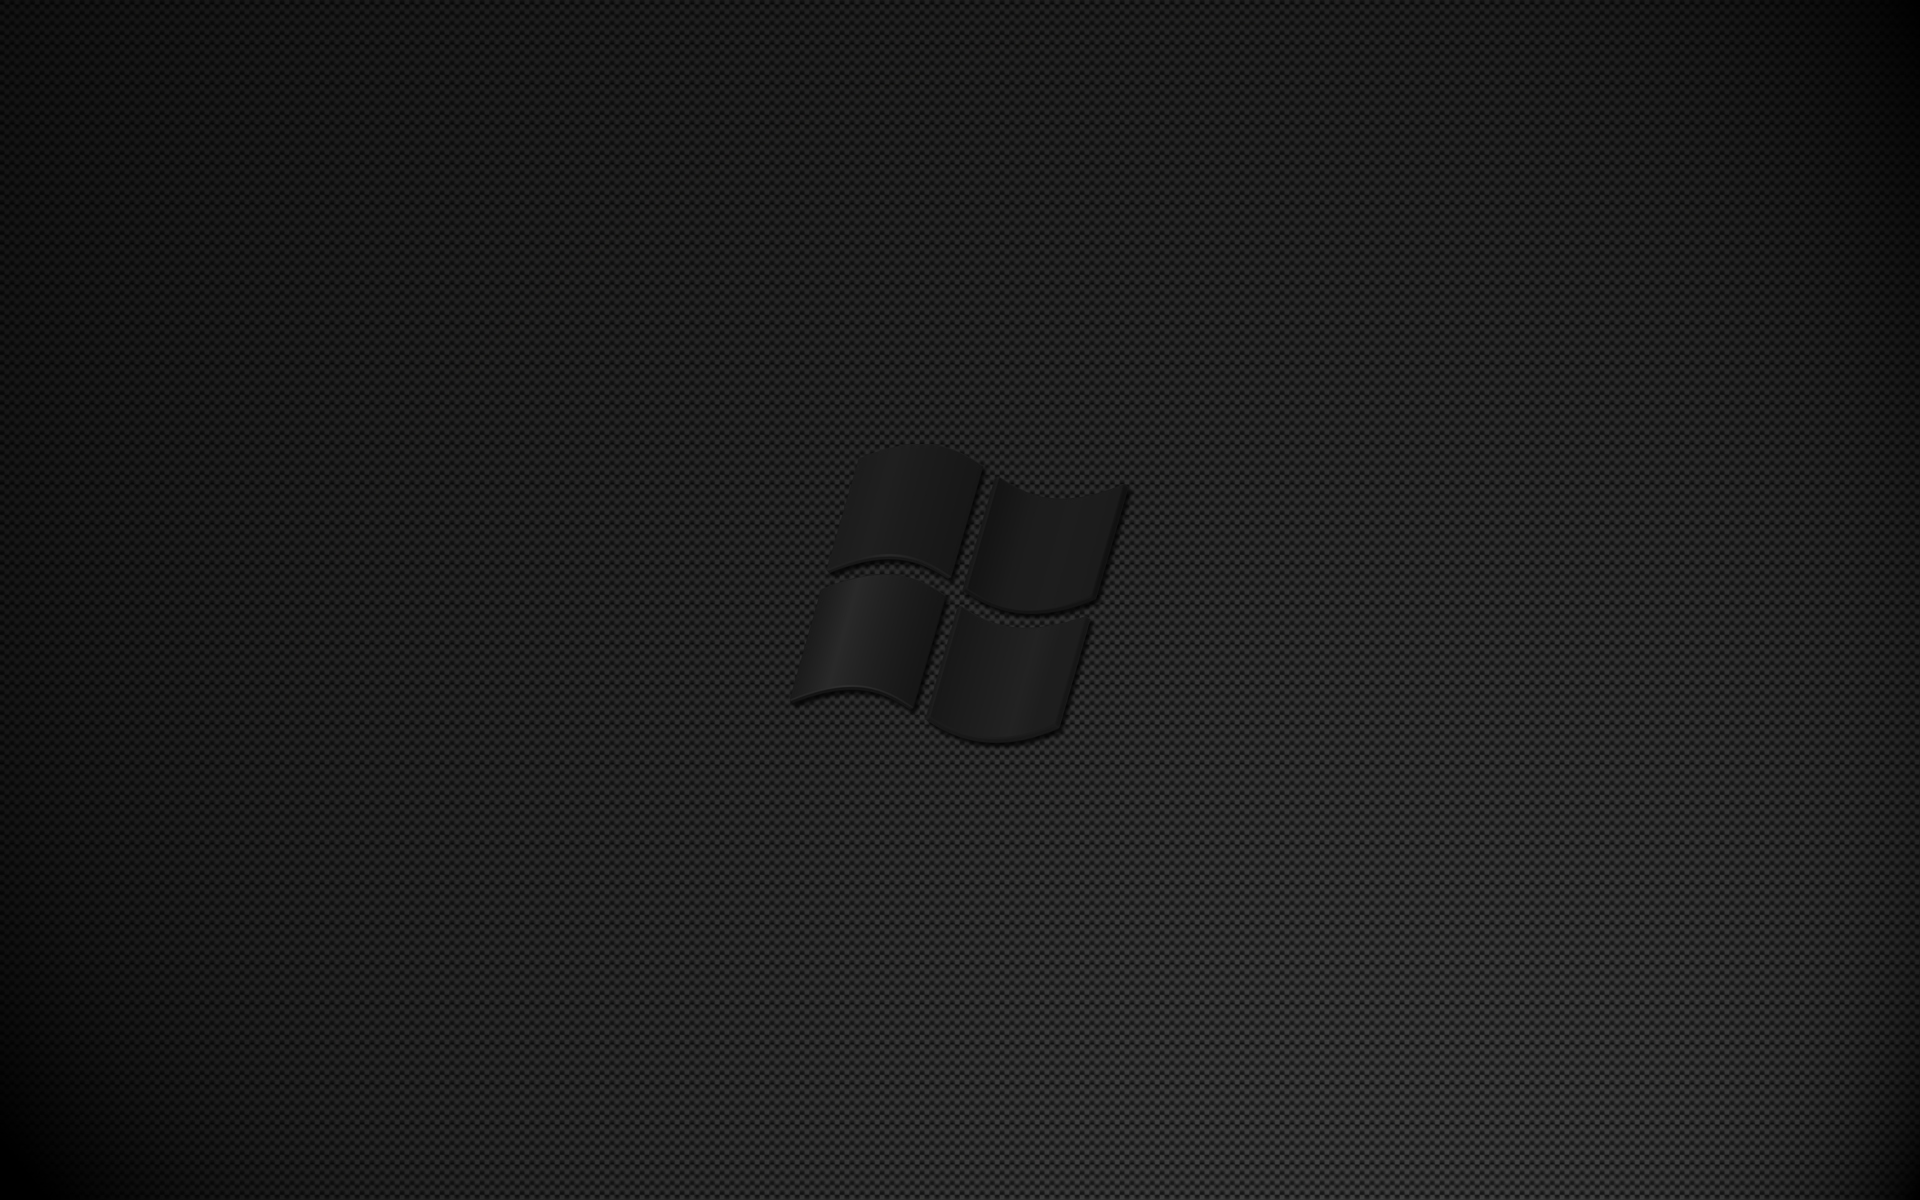 Windows Dark Wallpaper là một sự kết hợp tuyệt vời giữa mảng màu đen và giao diện Windows. Hãy tải ngay hình nền này để thể hiện cá tính và phong cách cho màn hình Desktop của bạn.